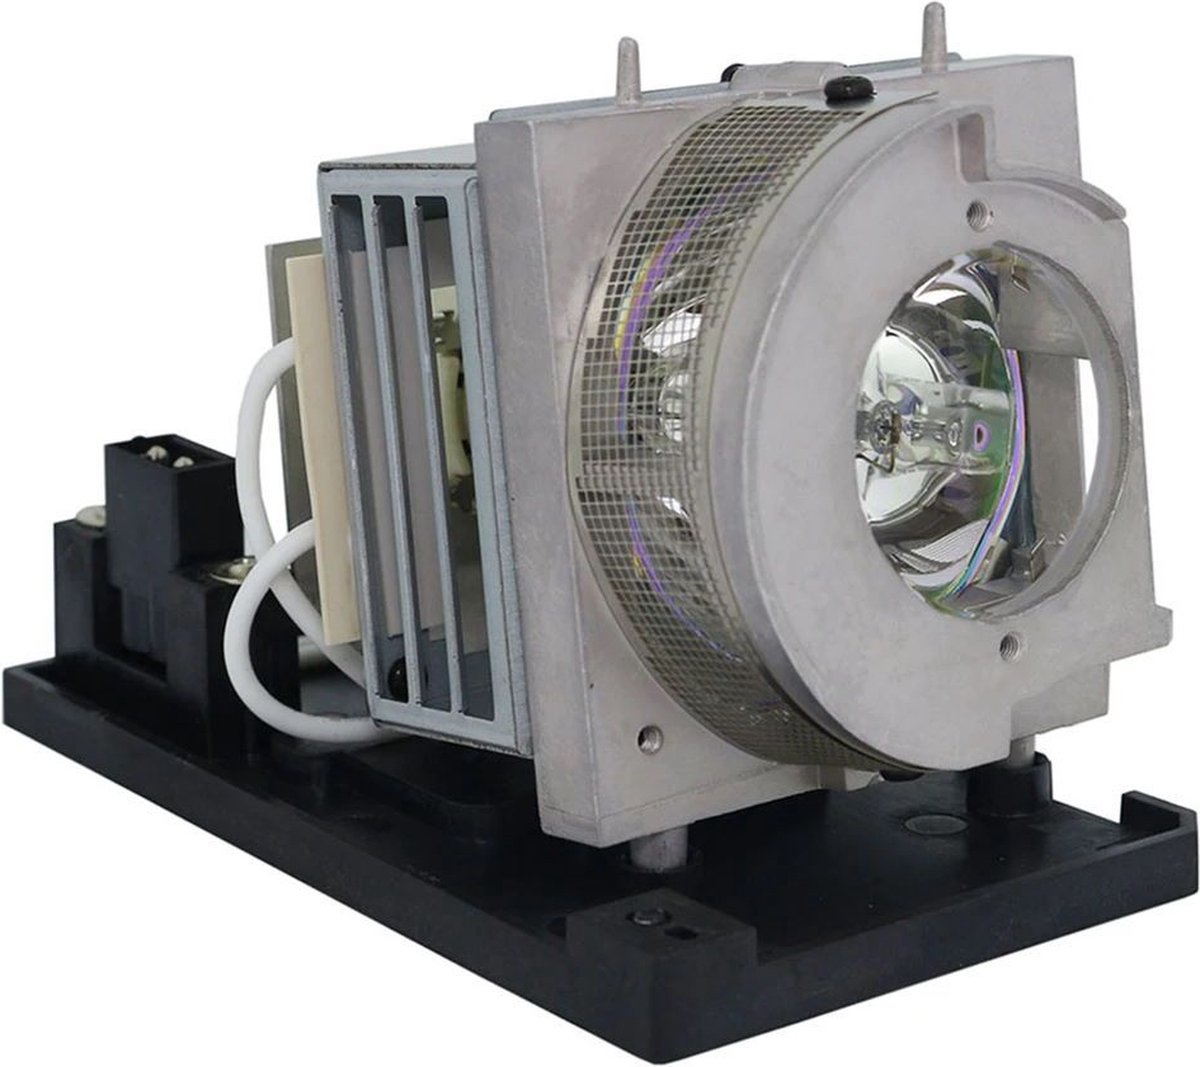 Beamerlamp geschikt voor de ACER U5230 beamer, lamp code MC.JQX11.001 / UC.JQX11.001. Bevat originele UHP lamp, prestaties gelijk aan origineel.